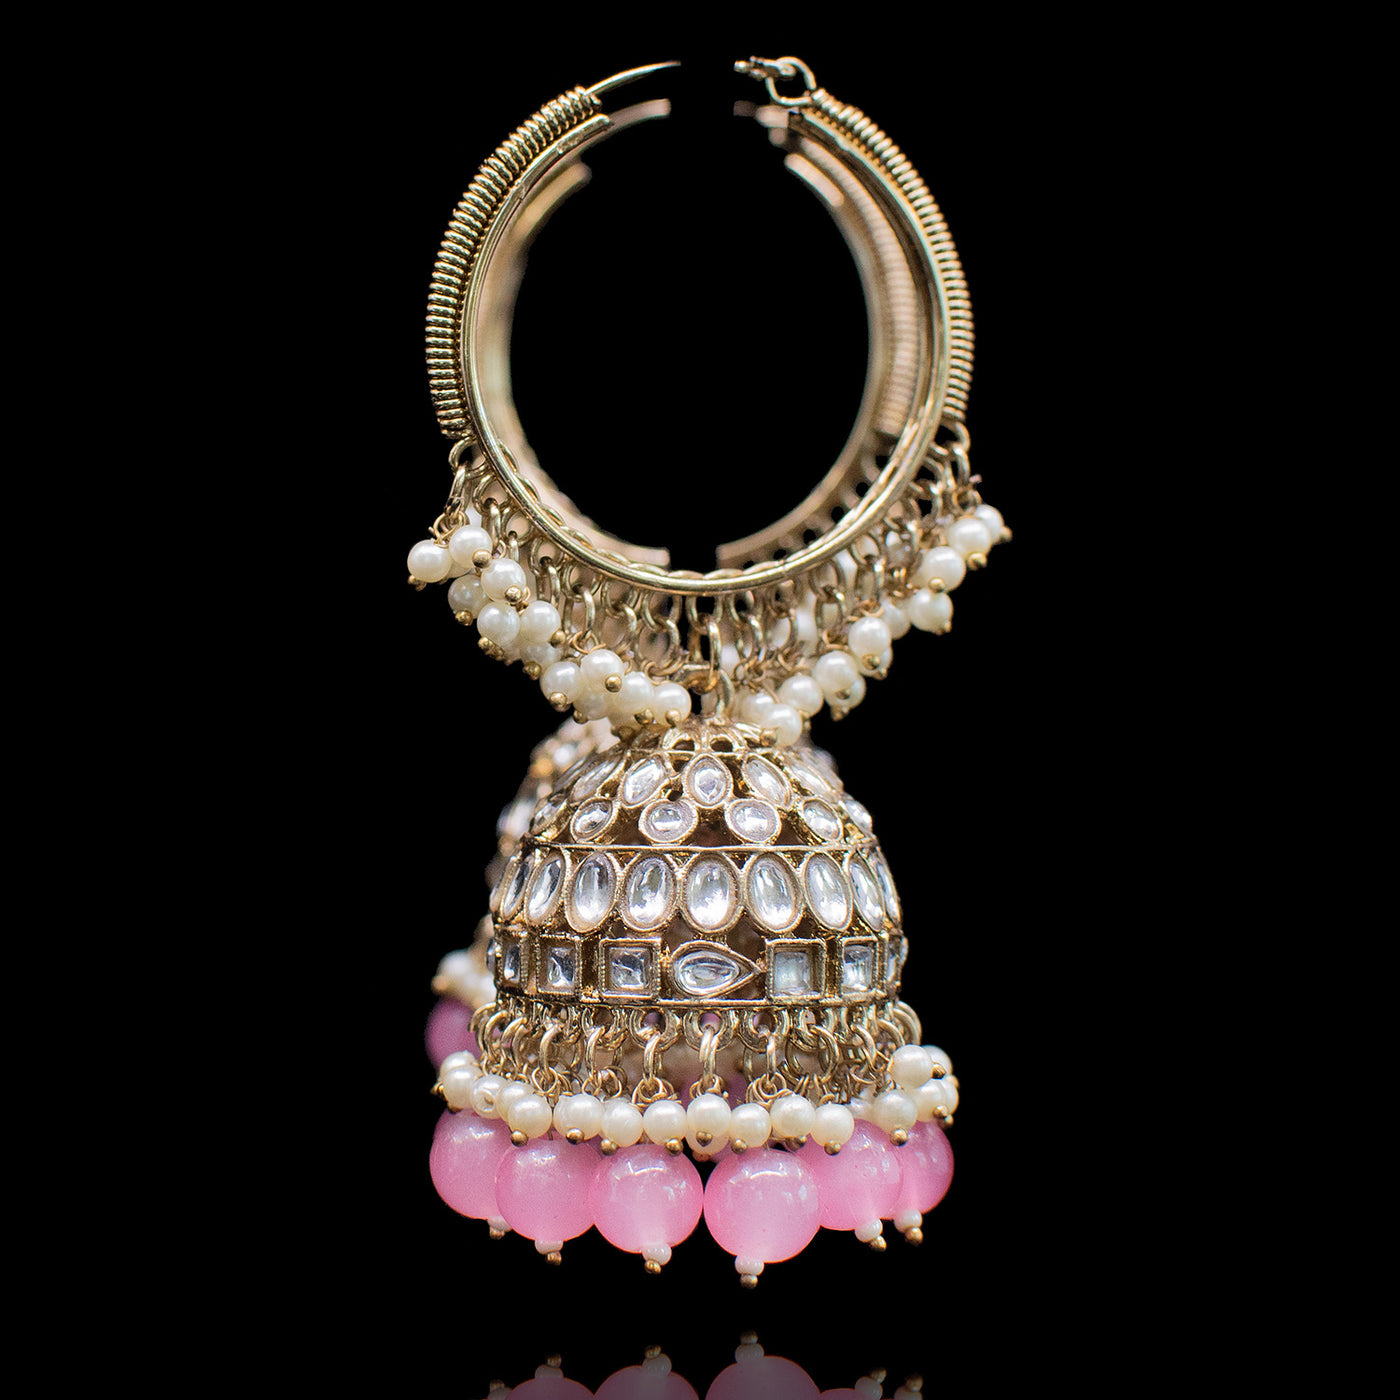 Kashaf Earrings - Pink